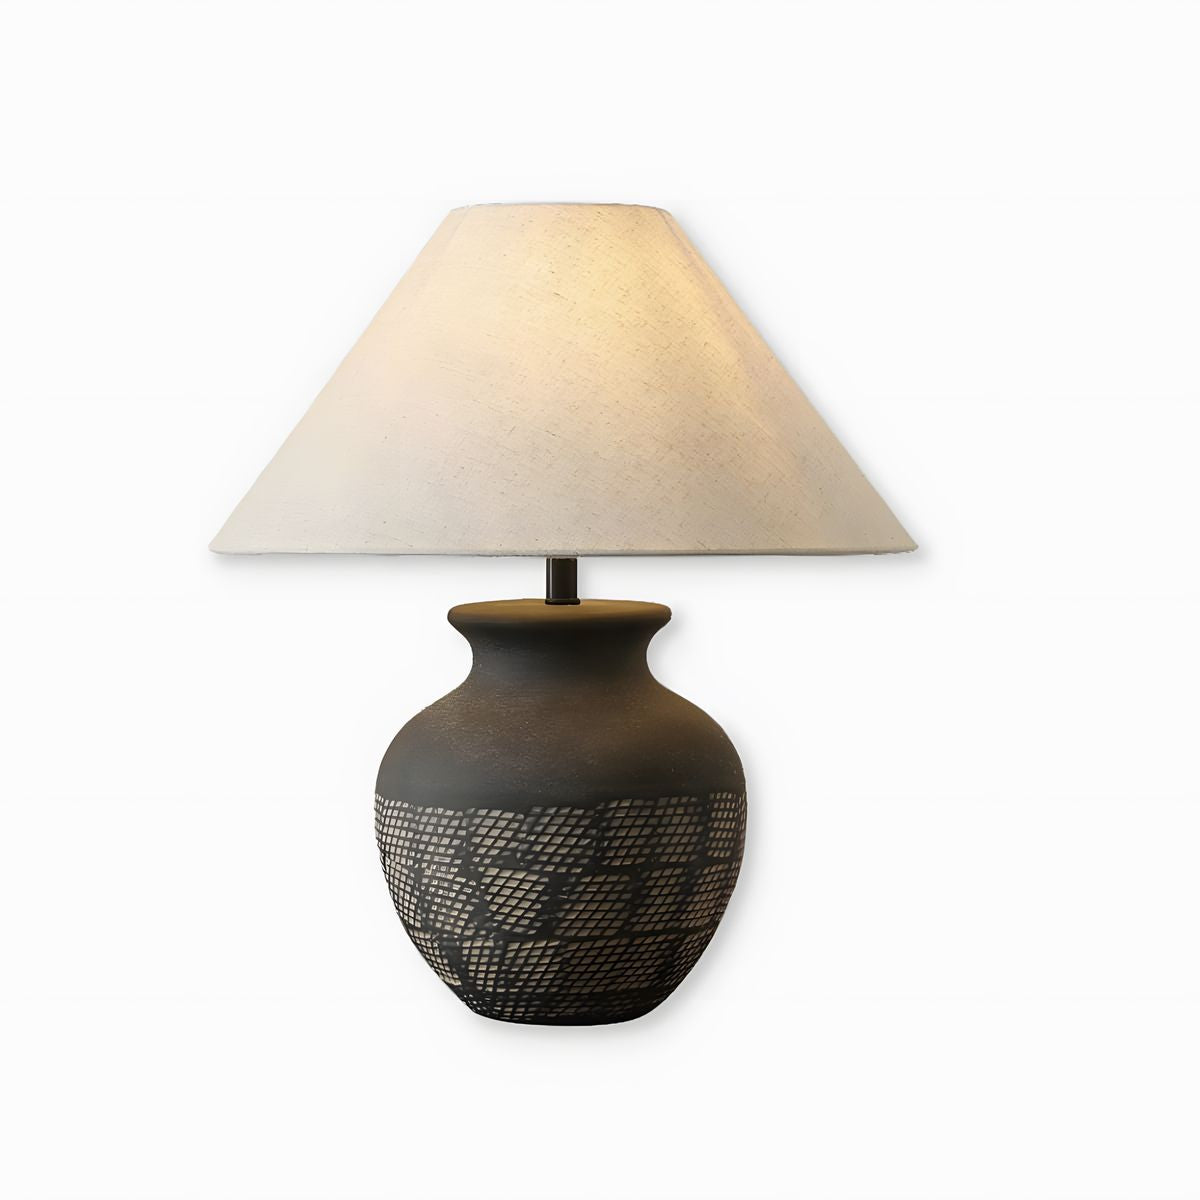 Retro Ceramic Table Lamp - Vinlighting